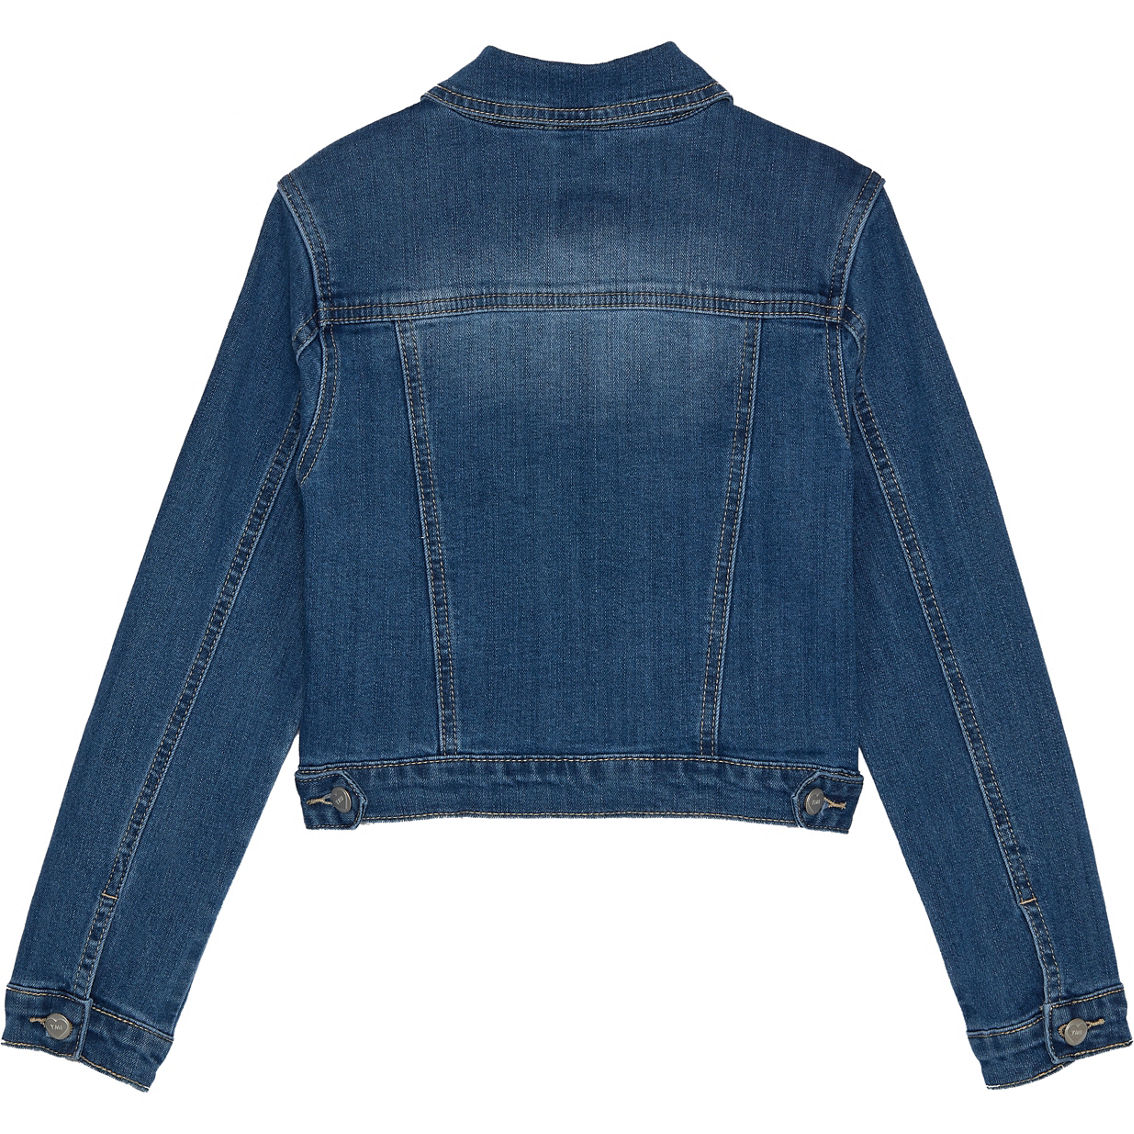 Ymi Jeans Girls Denim Jacket | Girls 7-16 | Clothing & Accessories ...